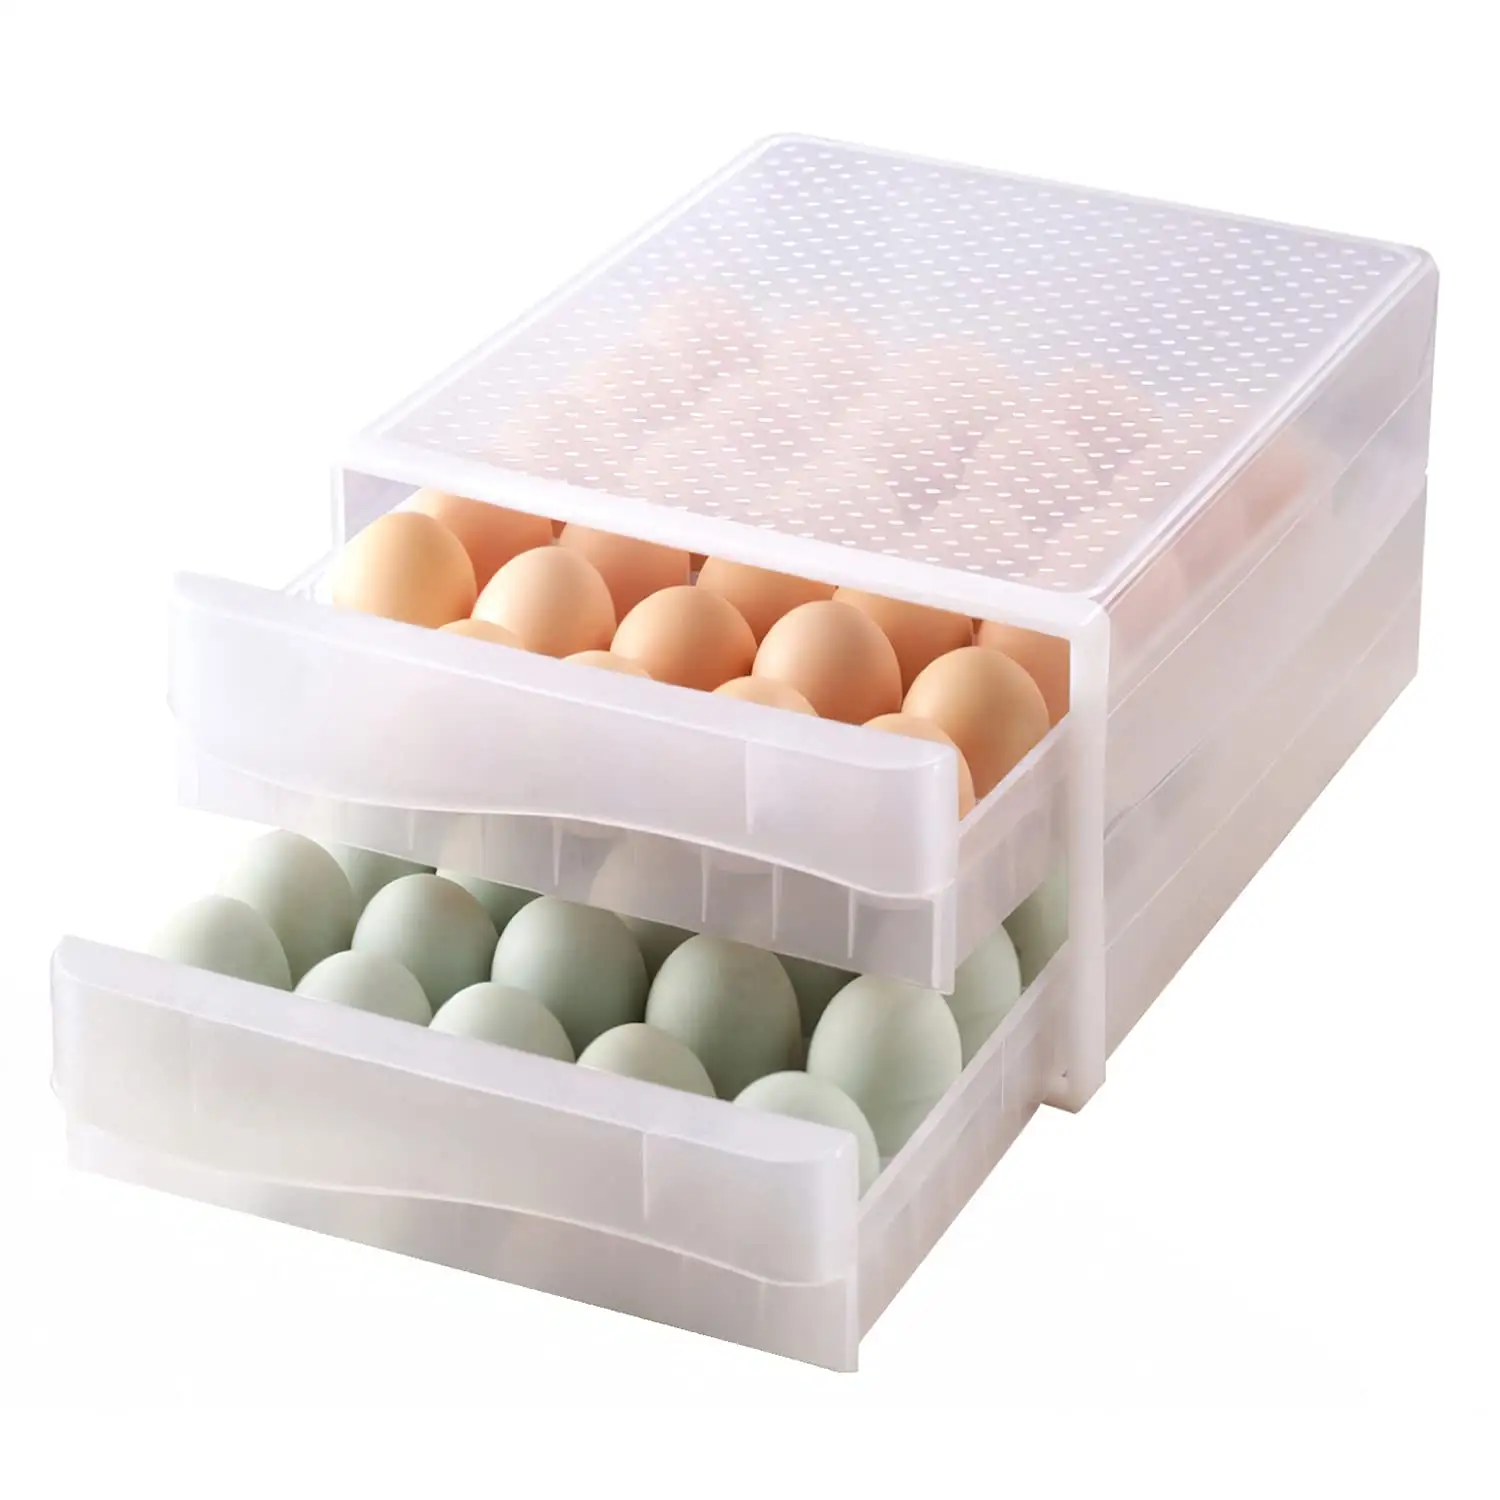 60 그리드 대용량 스토리지 컨테이너 스택 더블 레이어 계란 저장 상자 플라스틱 계란 홀더 홈 주방